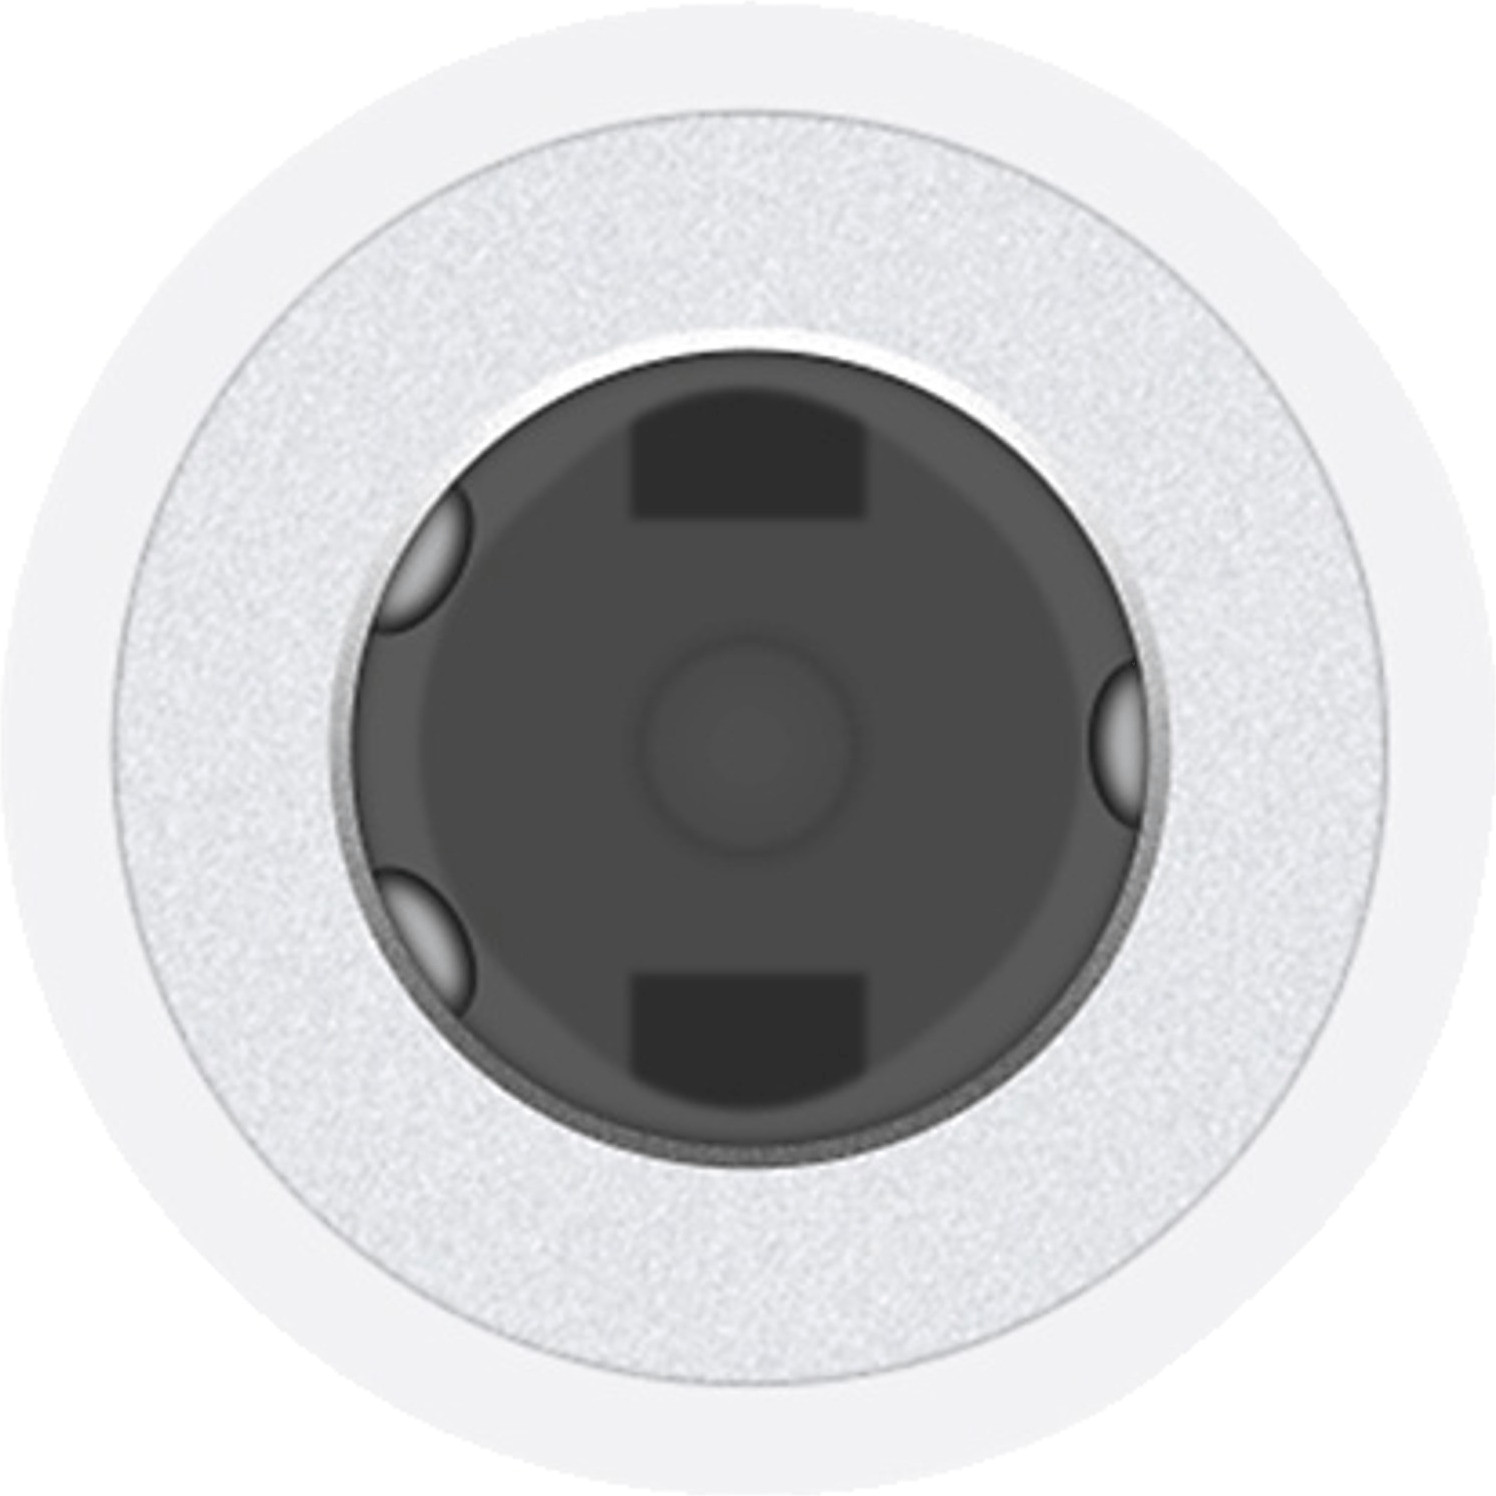 Apple Câble audio Lightning vers mini-jack 3,5 mm (1,2 m) : meilleur prix  et actualités - Les Numériques